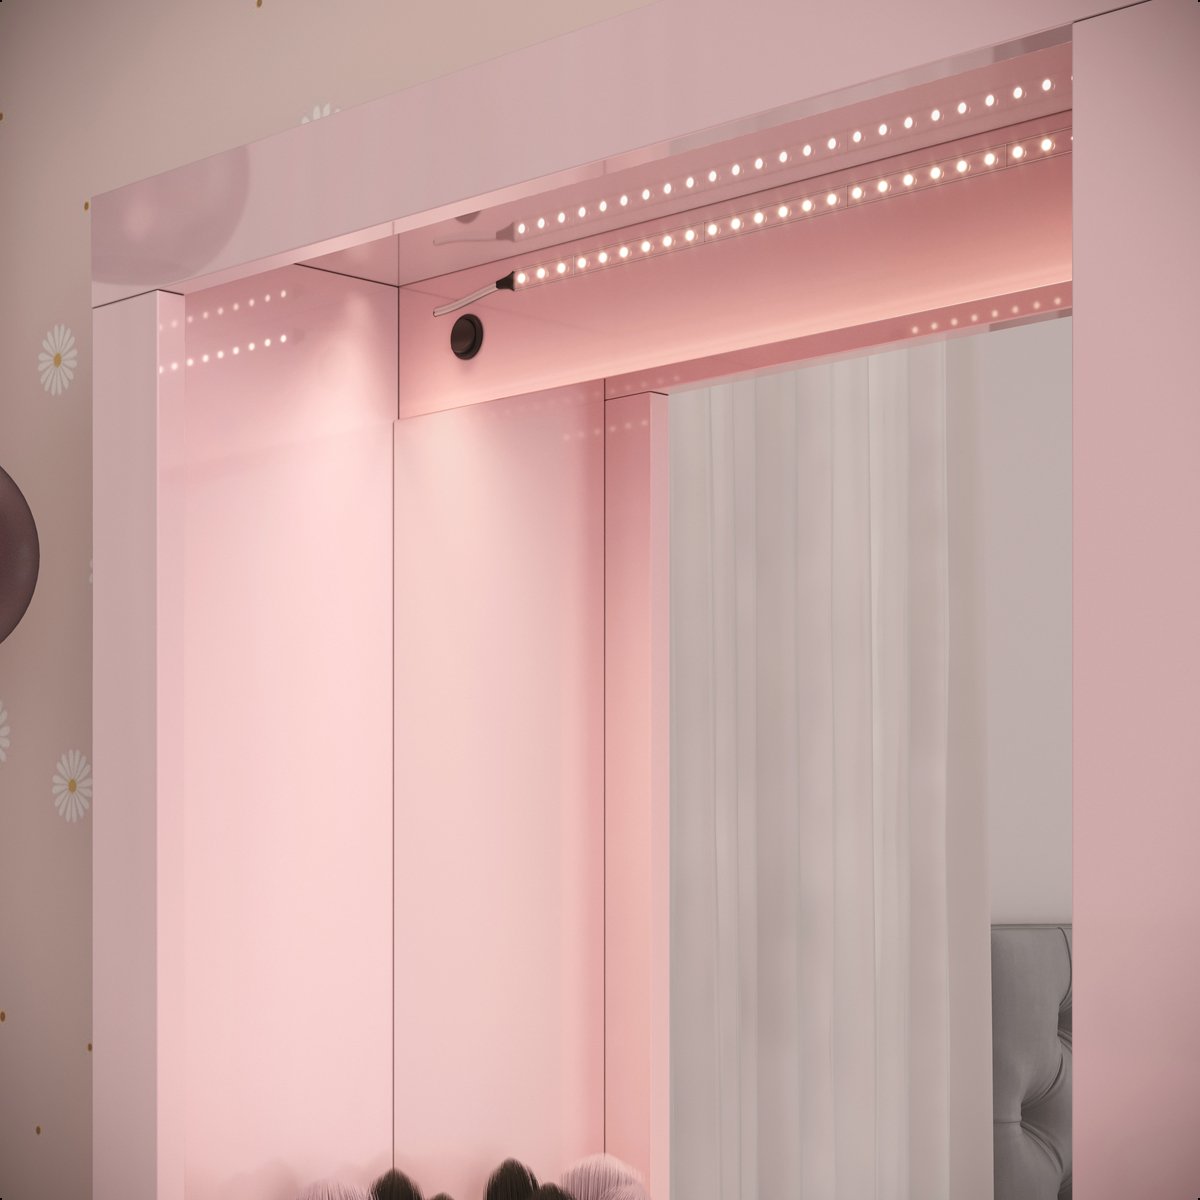 Penteadeira Suspensa Camarim com Espelho e Iluminação em Led:rosa - 5